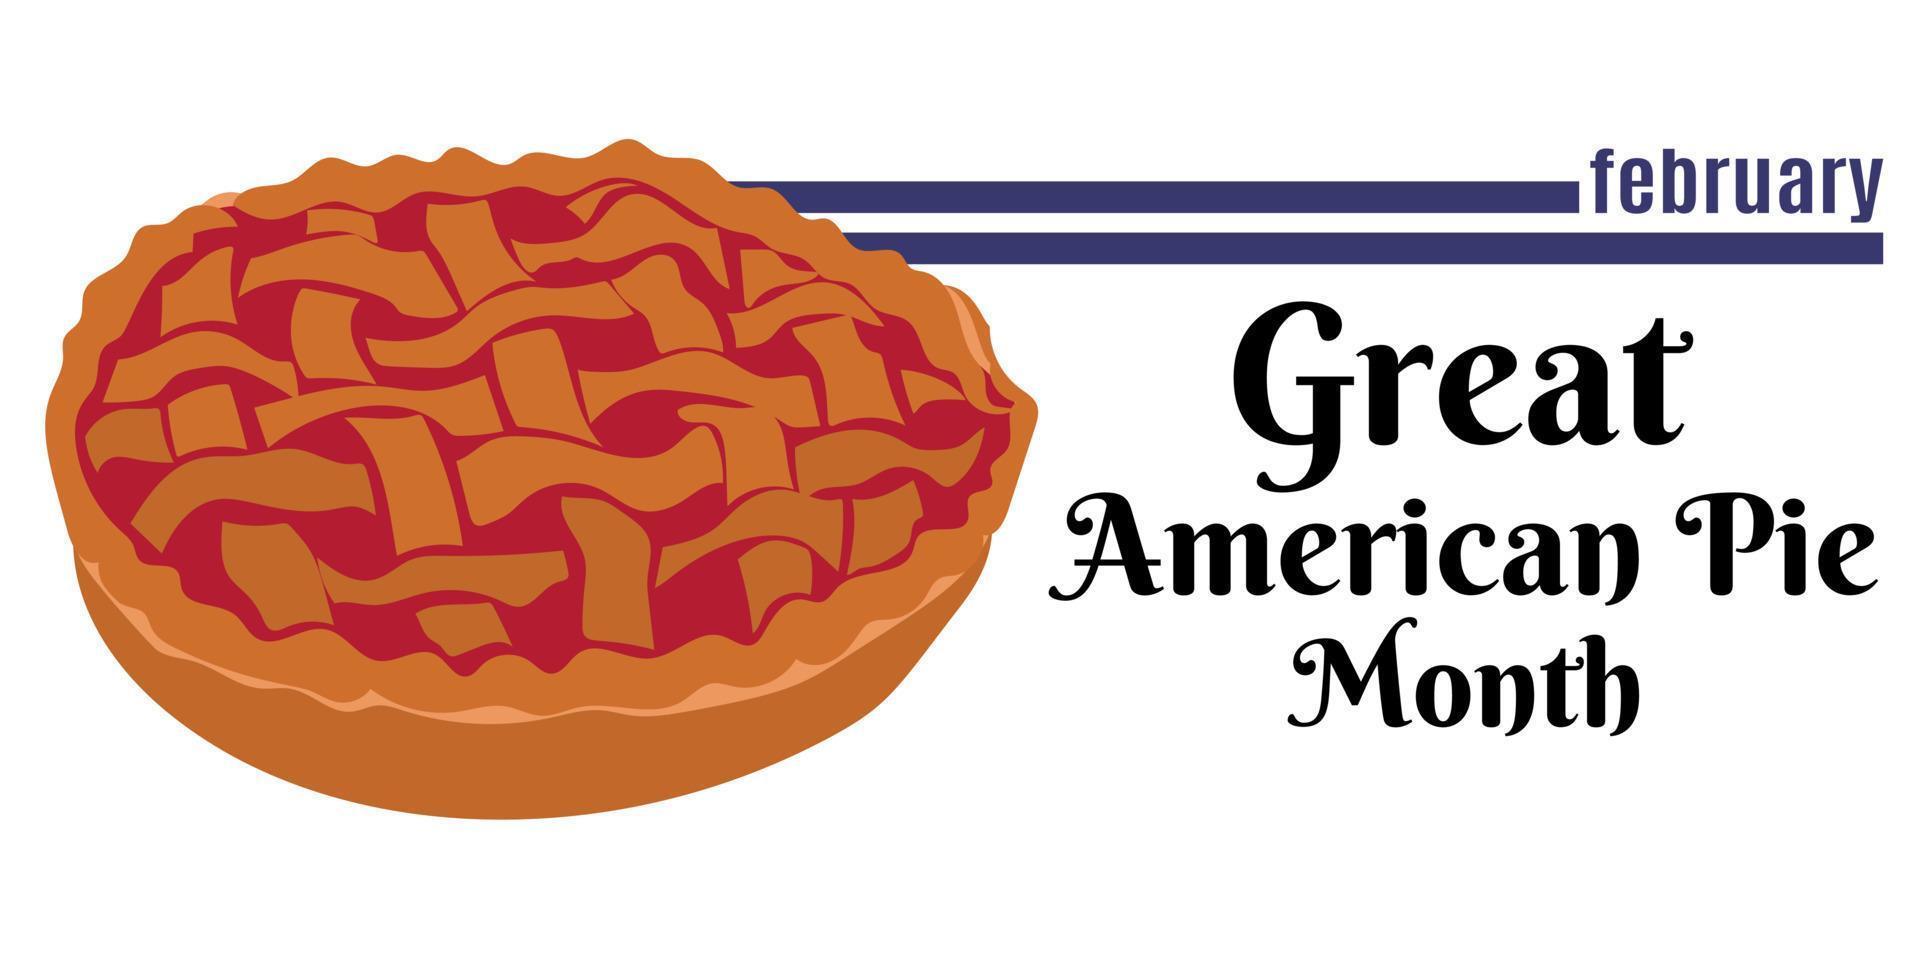 Great American Pie Month, Idee für ein horizontales Design für ein Event oder Menüdesign vektor